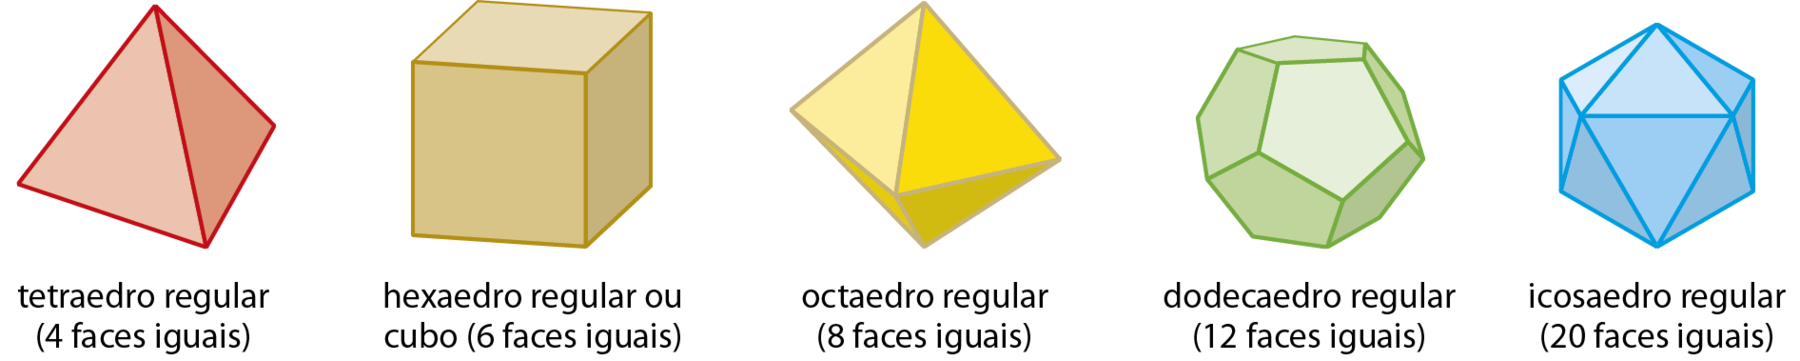 Figura geométrica. Sólido geométrico laranja com 4 faces triangulares idênticas. Abaixo, a legenda ‘tetraedro regular (4 faces iguais)’. Figura geométrica. Bloco retangular bege com as 6 faces quadradas. Abaixo, a legenda ‘hexaedro regular ou cubo (6 faces iguais)’. Figura geométrica. Sólido geométrico amarelo que tem 8 faces triangulares idênticas, sendo que 4 delas têm um único ponto em comum que está oposto ao ponto comum das outras 4 faces. Tem formato parecido com o de um balão de festa junina. Abaixo, a legenda ‘hexaedro regular ou cubo (6 faces iguais)’. Figura geométrica. Sólido geométrico verde que tem 12 faces pentagonais idênticas, sendo que cada vértice é comum a 3 arestas e cada aresta é comum a 2 faces. Abaixo, a legenda ‘dodecaedro regular (12 faces iguais)’. Figura geométrica. Sólido geométrico azul que tem 20 faces triangulares idênticas, sendo que cada vértice é comum a 5 arestas e cada aresta é comum a 2 faces. Abaixo, a legenda ‘icosaedro regular (20 faces iguais)’.